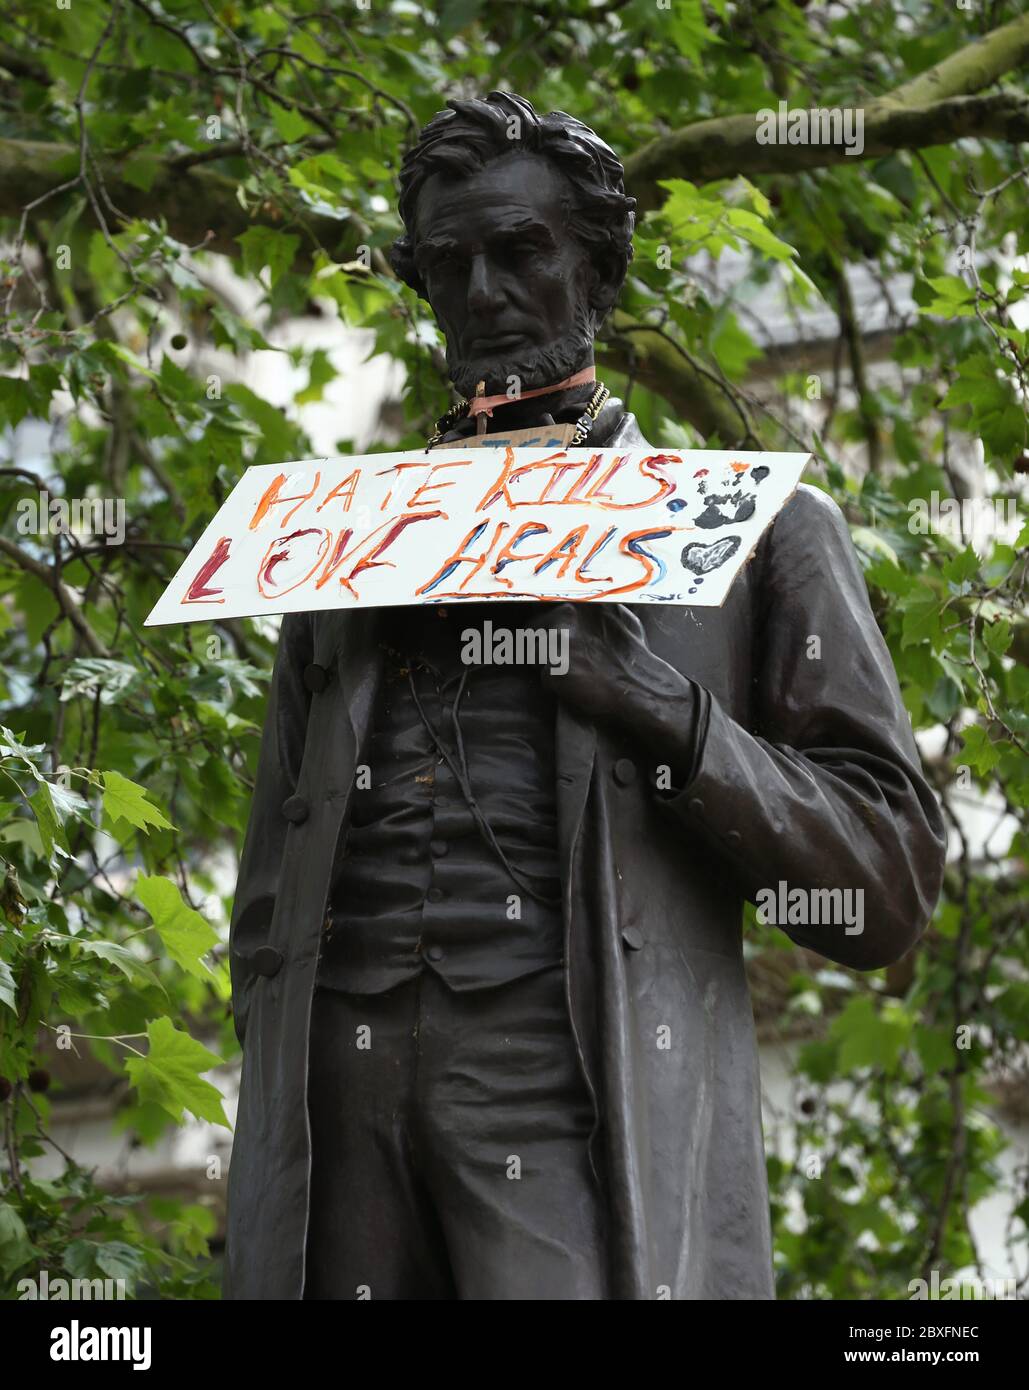 Un panneau lisant Hate Kills, Love Heals accroché autour de la statue d'Abraham Lincoln sur la place du Parlement, à la suite d'un rassemblement de protestation Black Lives Matter à la mémoire de George Floyd qui a été tué le 25 mai alors qu'il était en garde à vue dans la ville américaine de Minneapolis. Banque D'Images